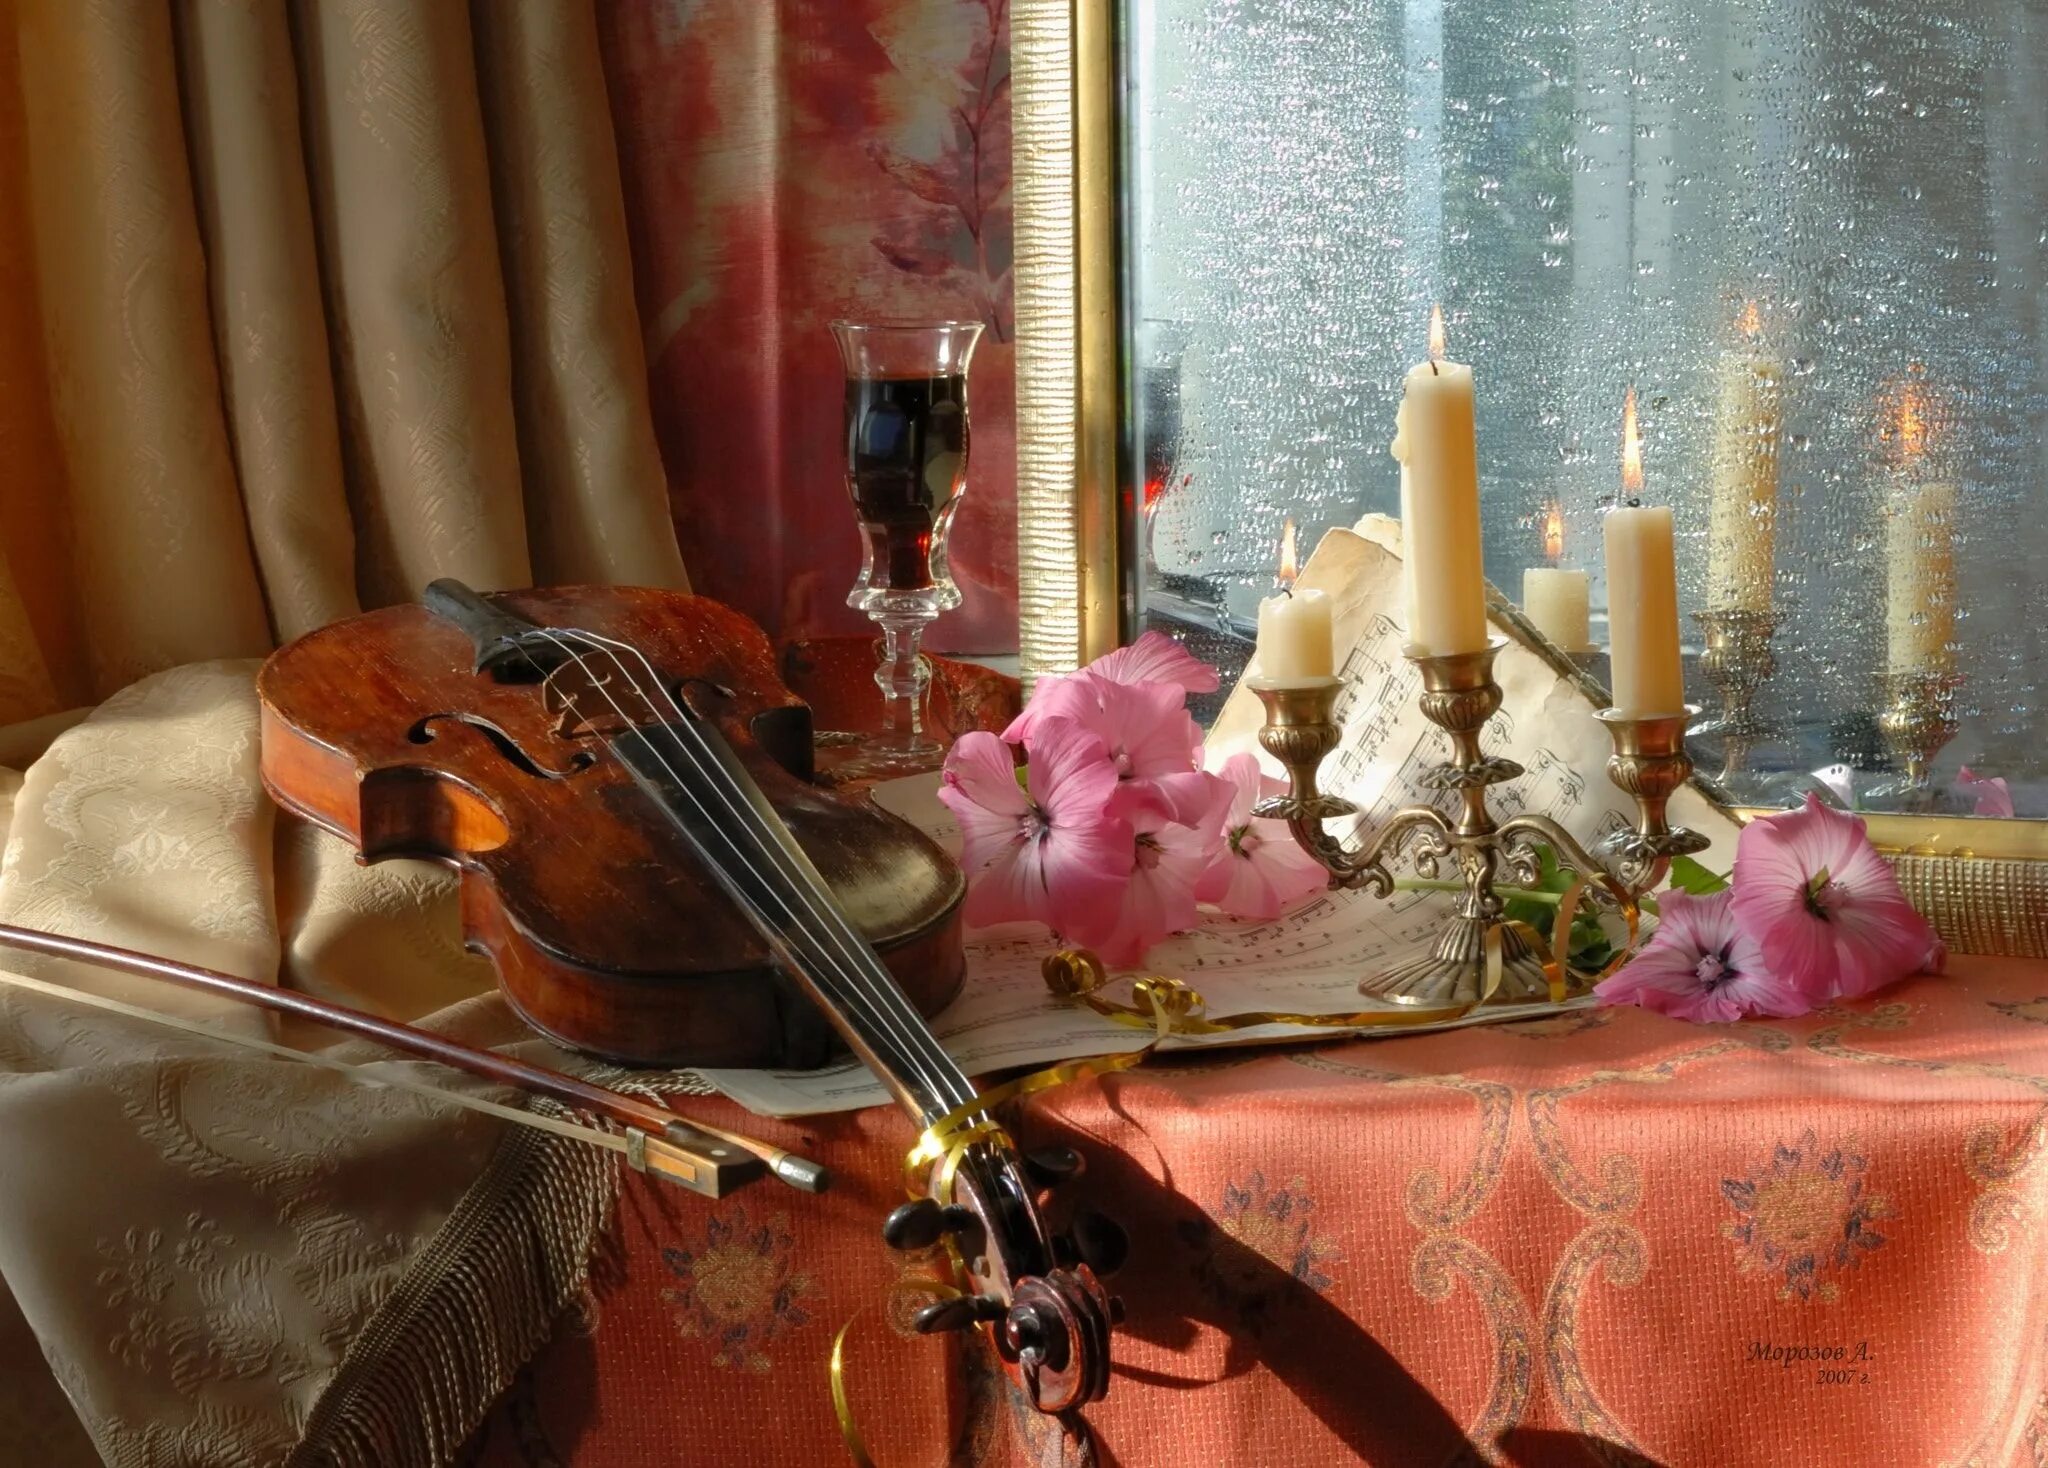 Музыка гитара и скрипка. Натюрморт с музыкальными инструментами. Натюрморт со скрипкой. Натюрморт со скрипкой и цветами. Скрипка и цветы.